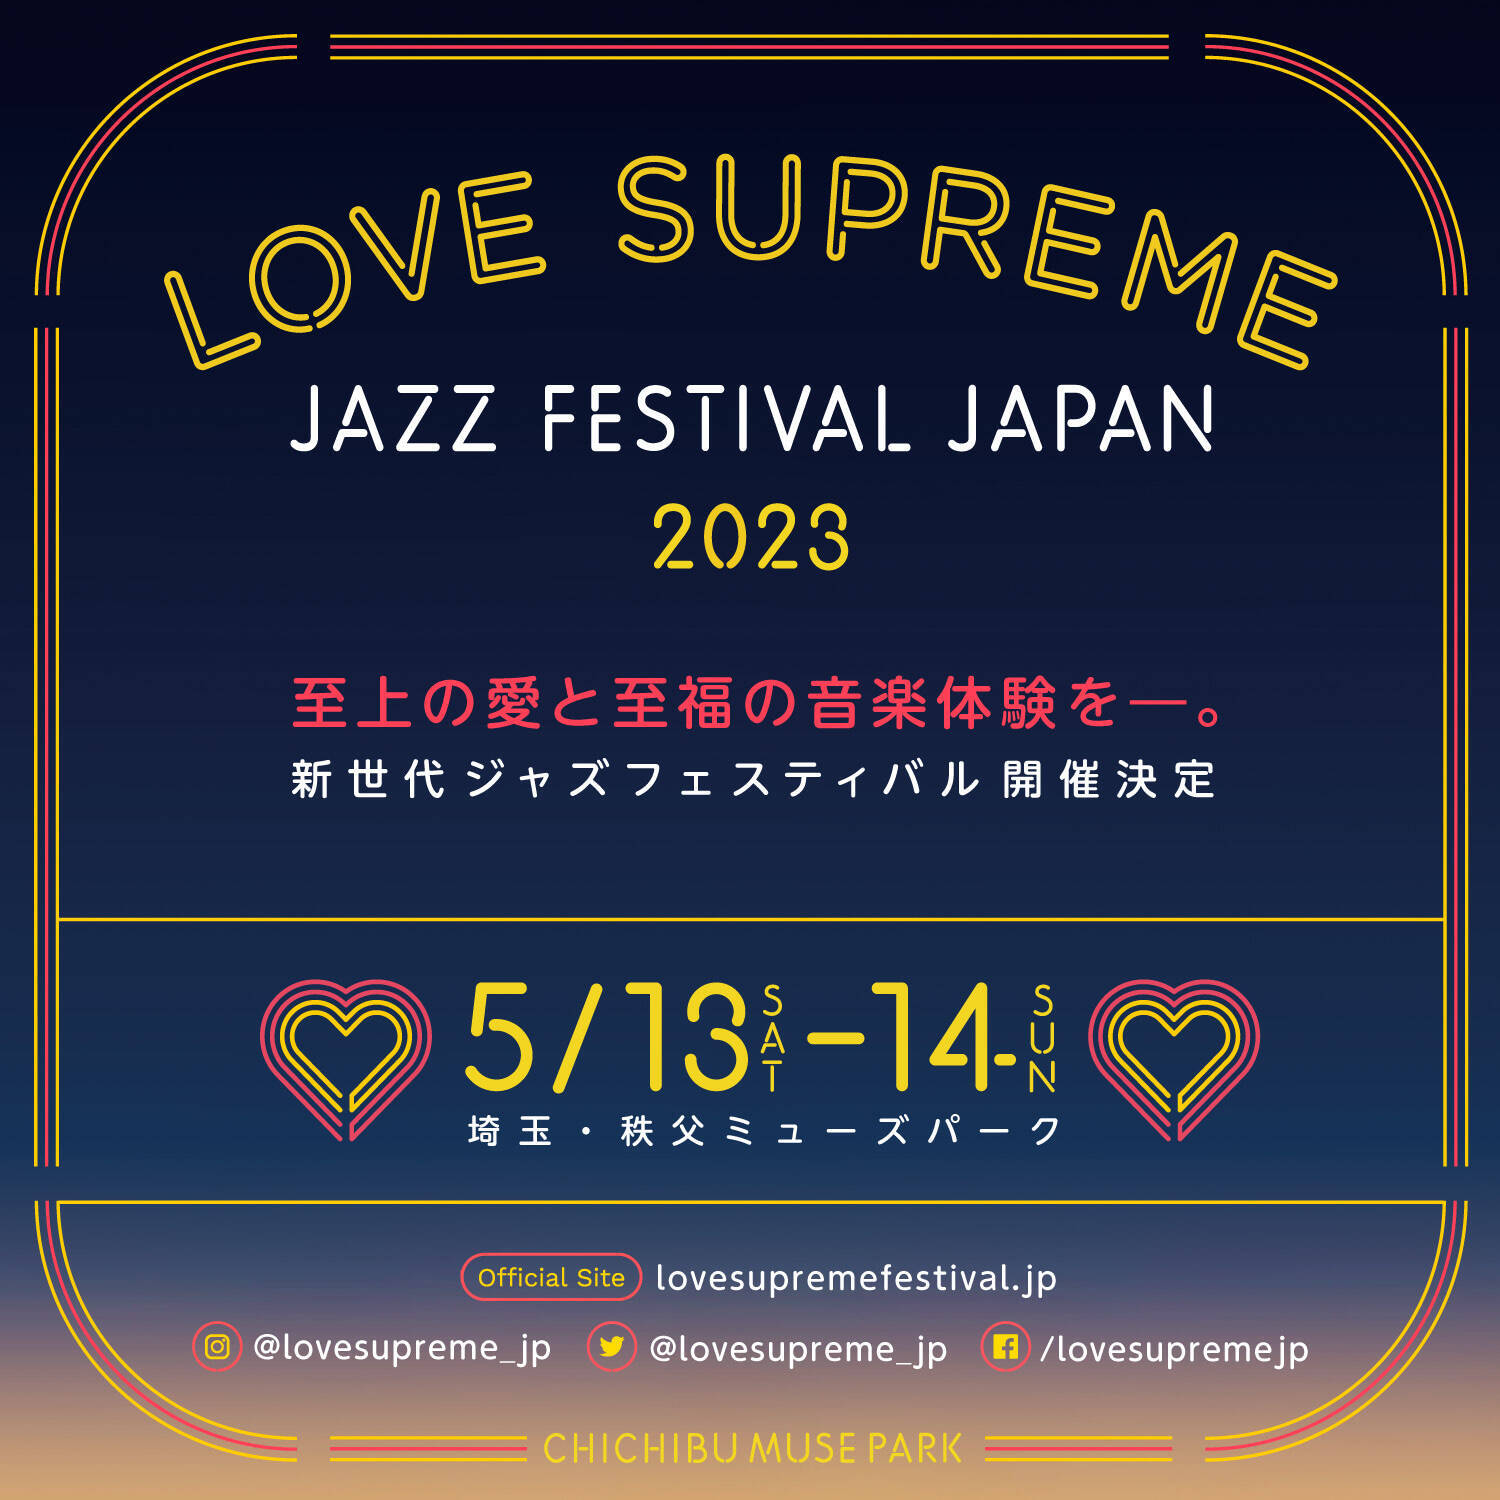 新世代ジャズフェス「LOVE SUPREME JAZZ FESTIVAL JAPAN 2023」5月に開催